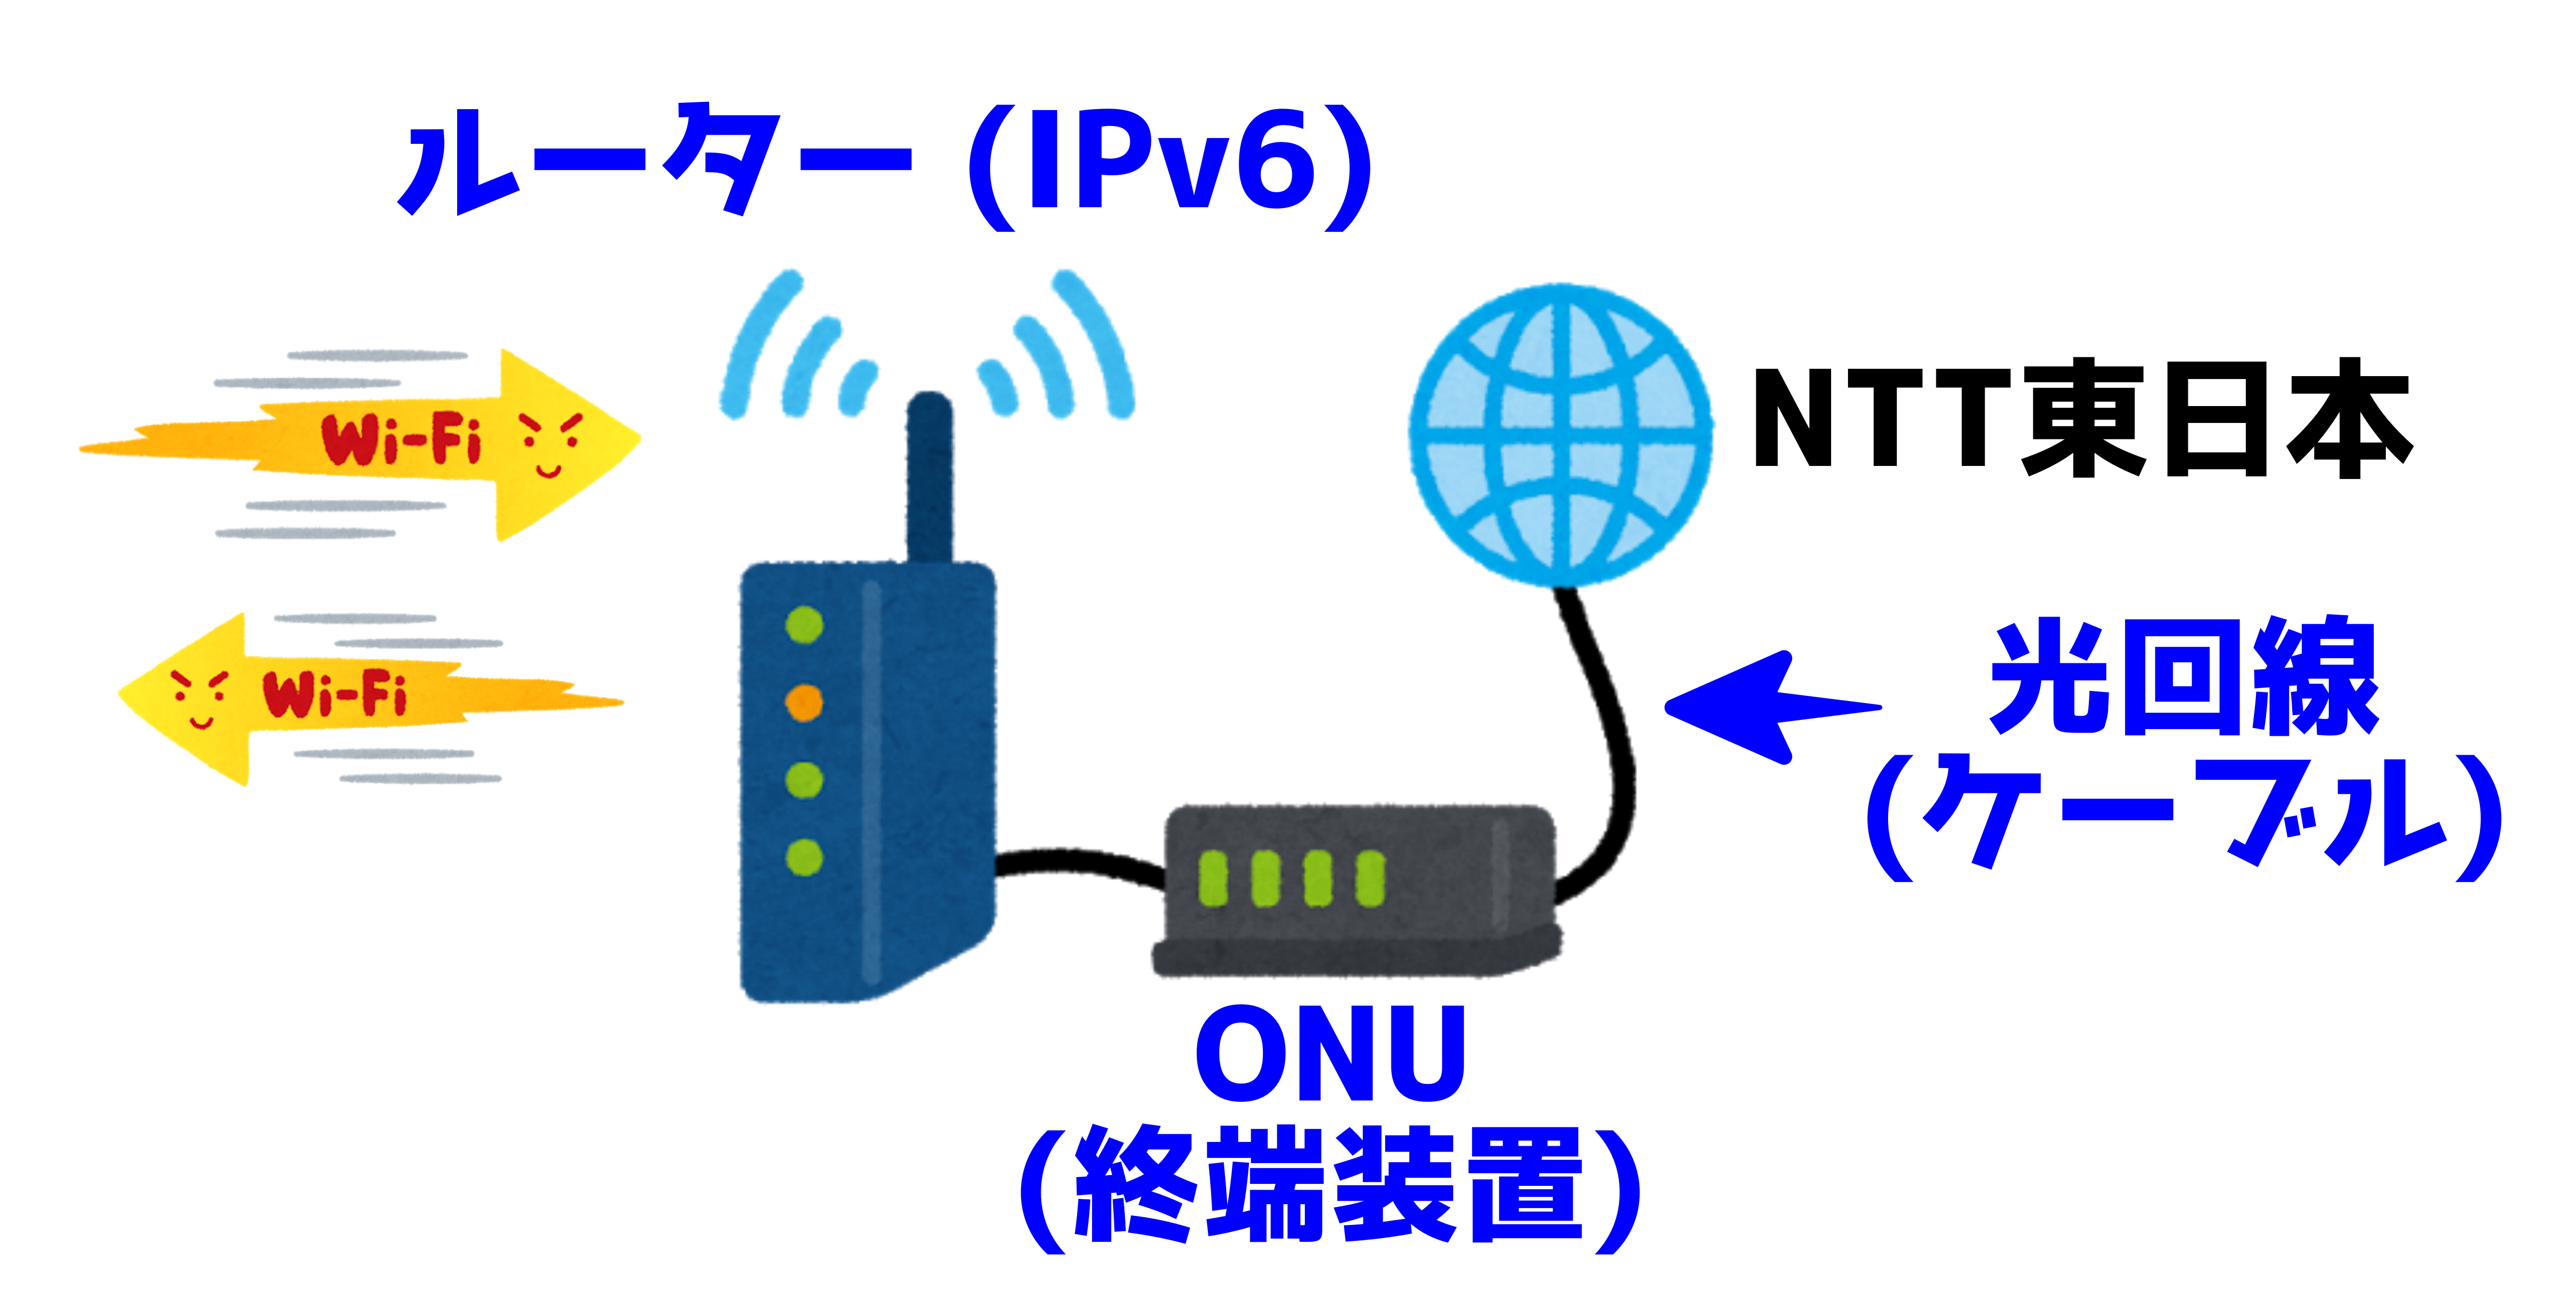 【2021最新】楽天ひかり対応 IPv6 メッシュ中継 最新ルーター NEC Aterm WG2600HP4【口コミ・評判・商品レビュー